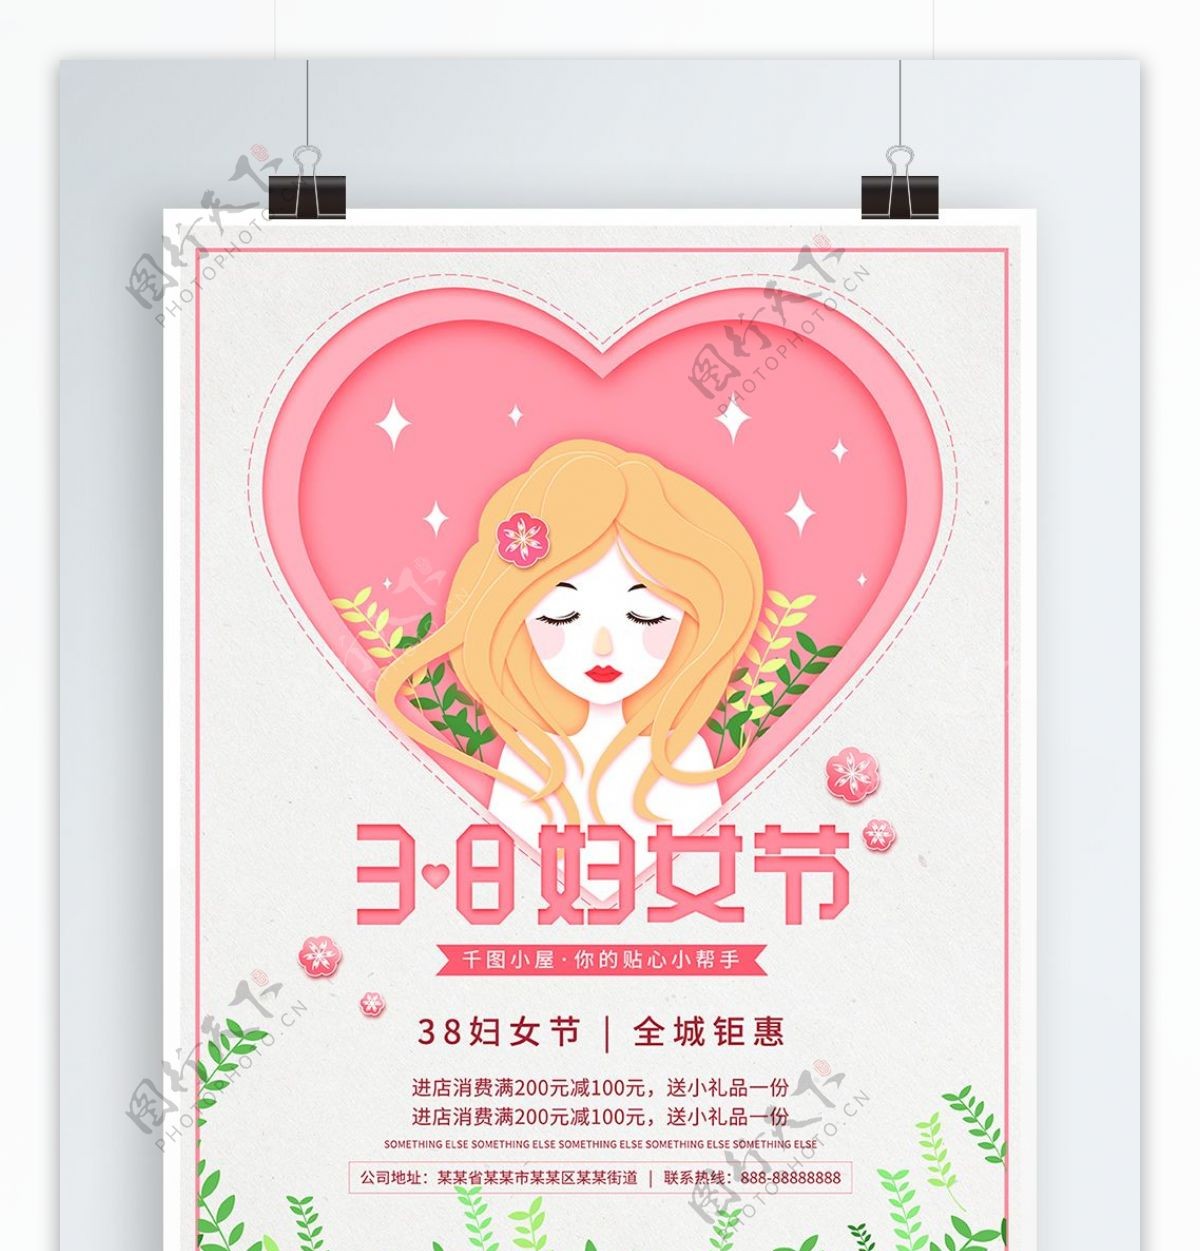 38妇女节粉红色原创少女插画唯美促销海报